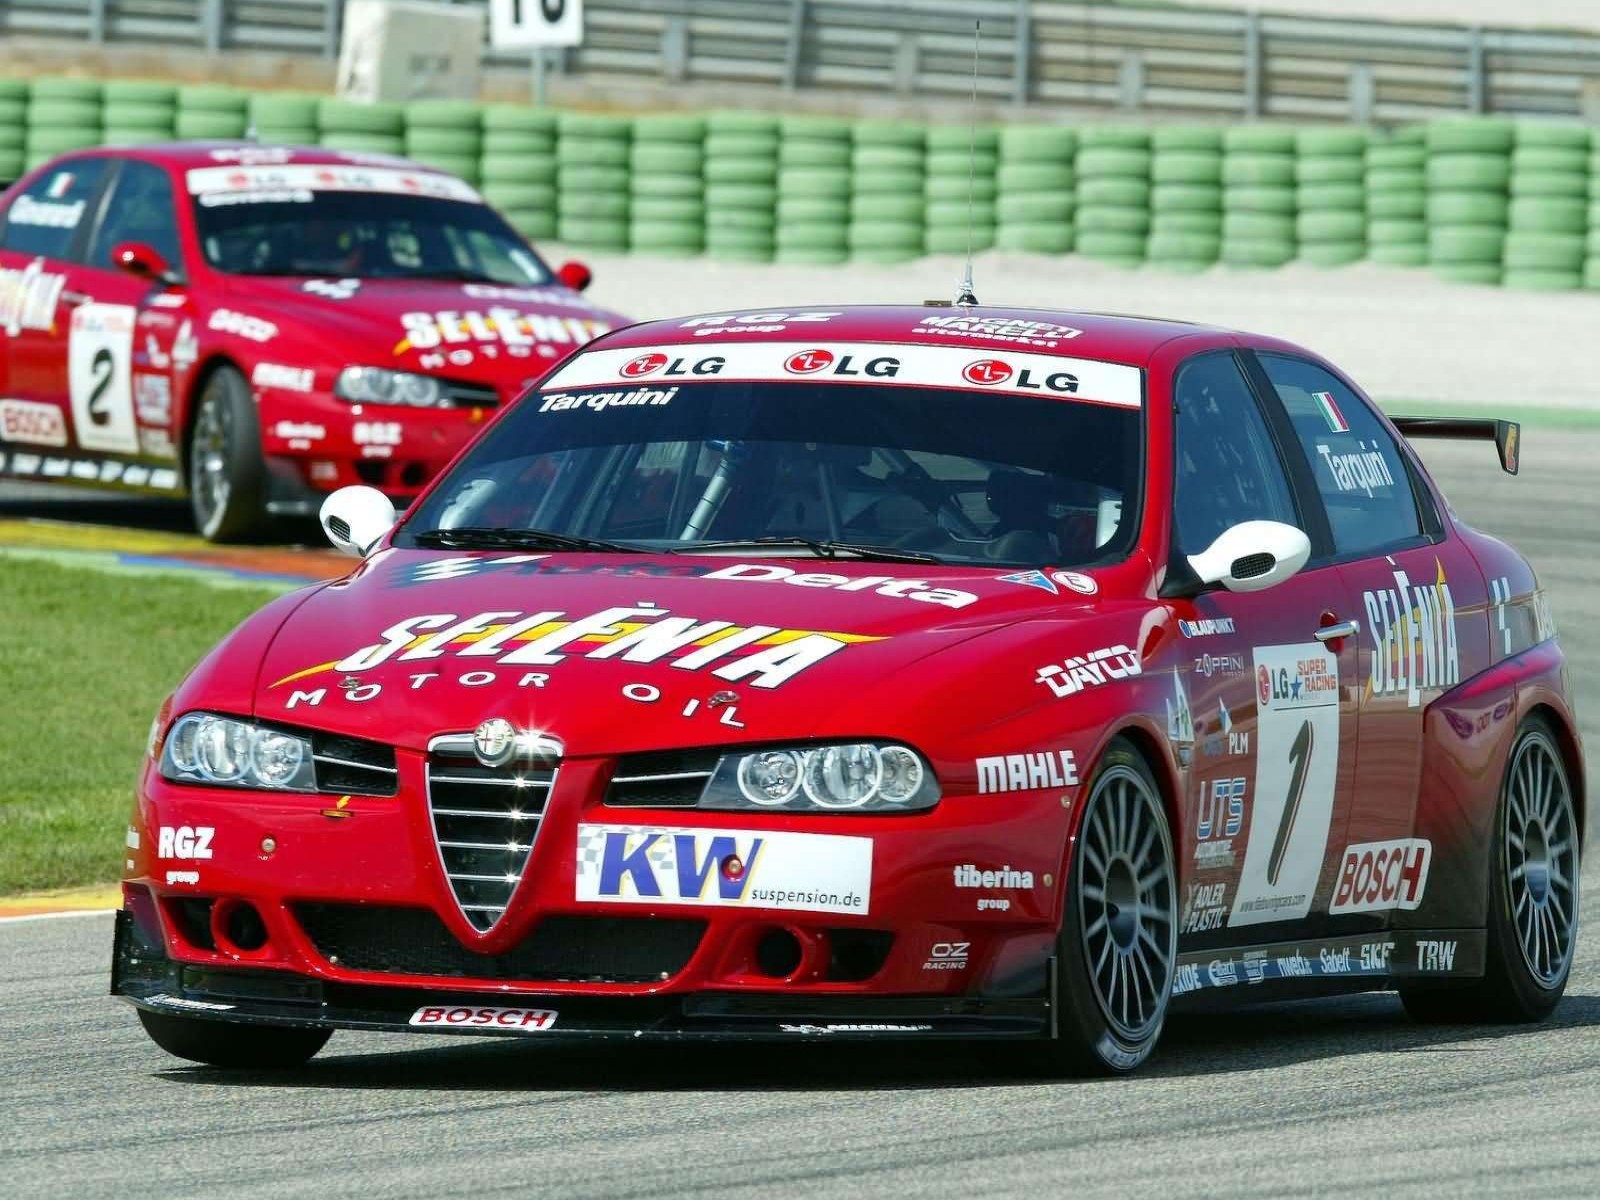 https://blogger.googleusercontent.com/img/b/R29vZ2xl/AVvXsEinOEwXa2Q9aMJTT2Xm3zexW5DAvX1j51NIoFArh2QuZzgmUk7677VDuEqs86tPJ2Bruzqms9aazS8cHKFDy4WgQhzVEiIjRUTIOOSxp9HYXCjFfSINVrckWStCi9-LilAWnB6lnqvQgWQ/s1600/Alfa+Romeo+156+GTA+Autodelta+2004+01.jpg